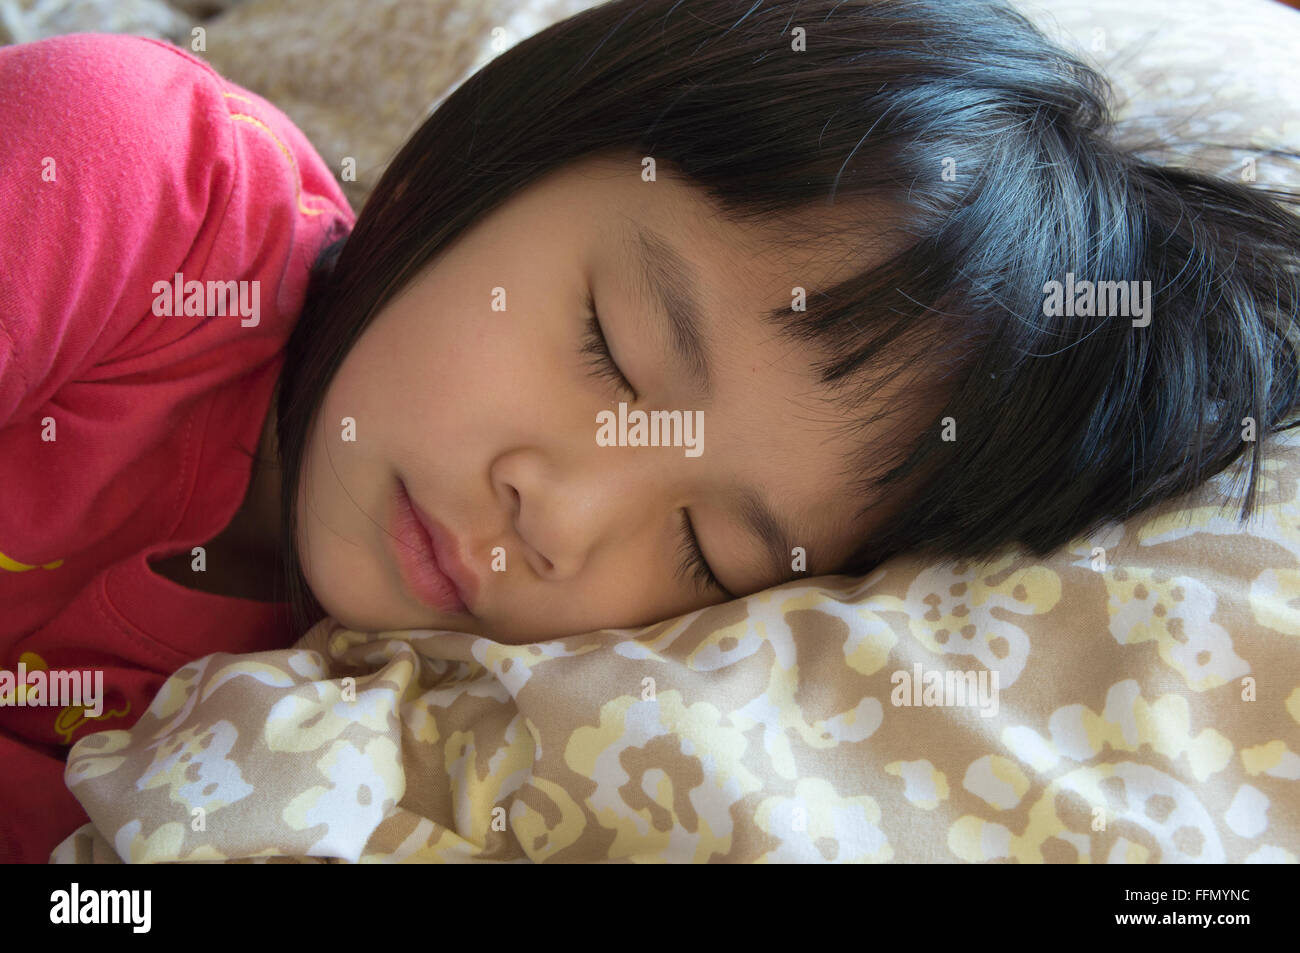 little girl sleeping on warm bed Stock Photo